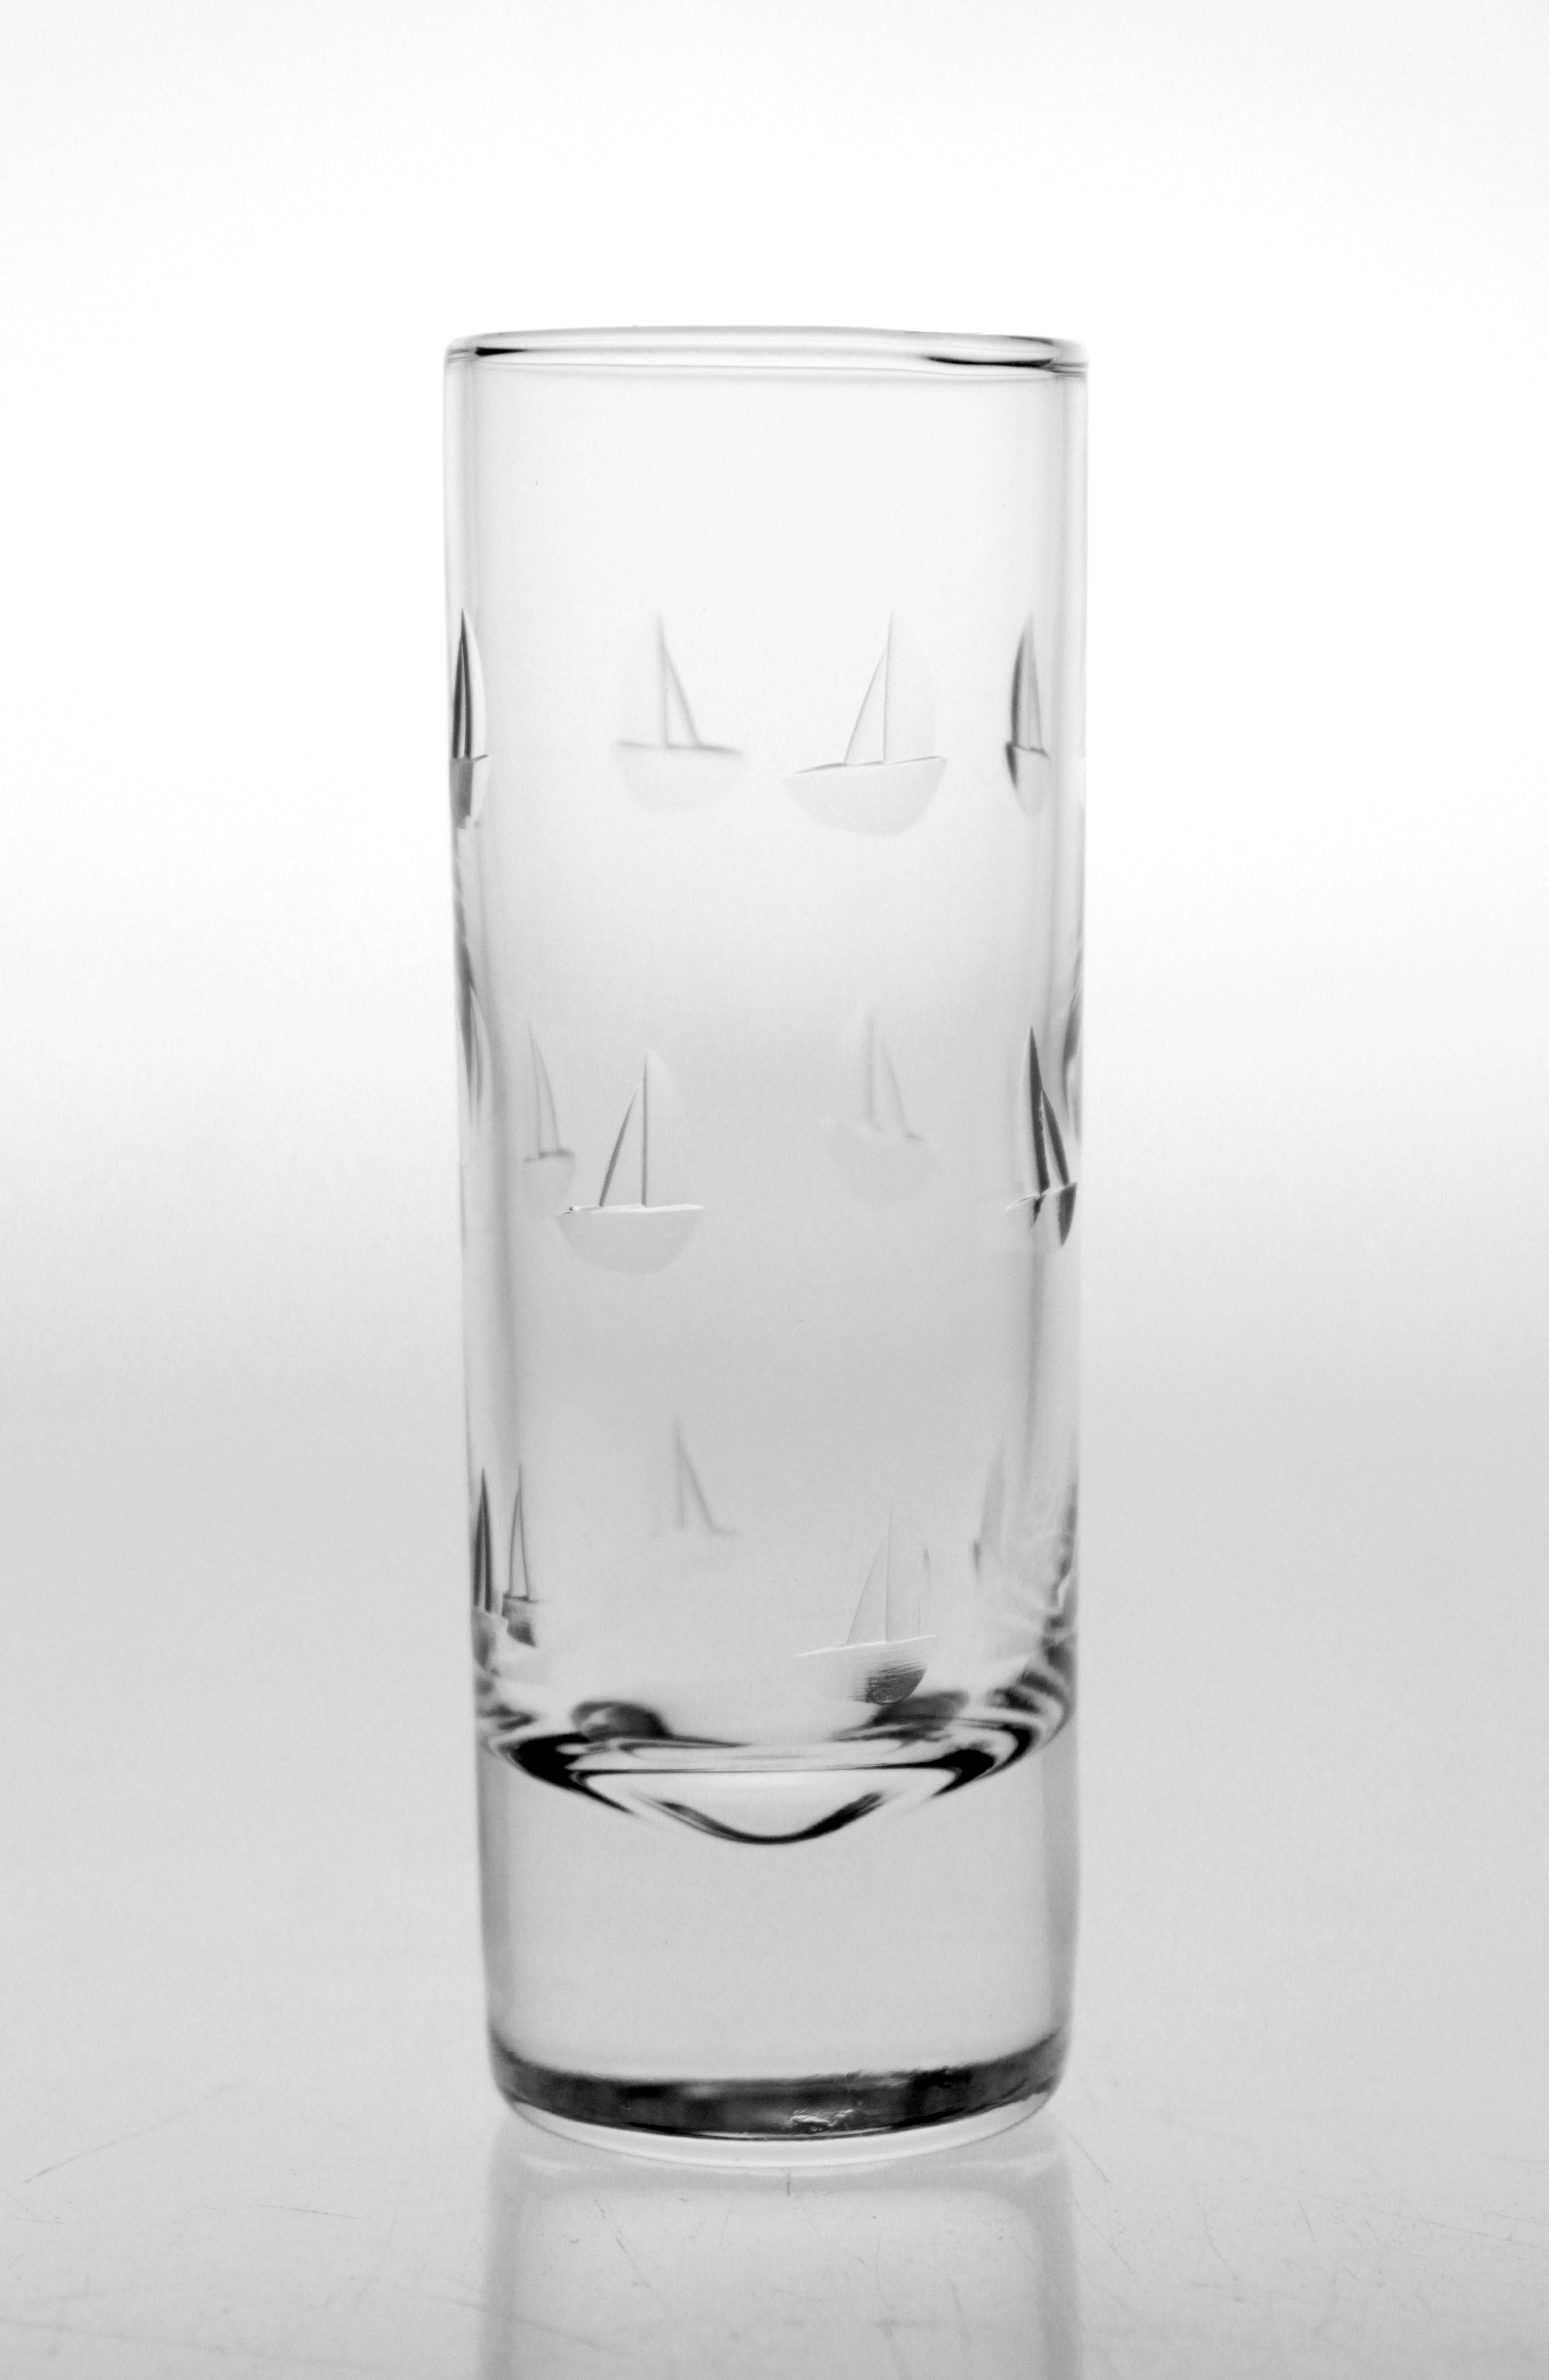 Sailing 2.5oz. Vodka/Tequila/Cordial Glasses-Set of 4 - MaisonBeach